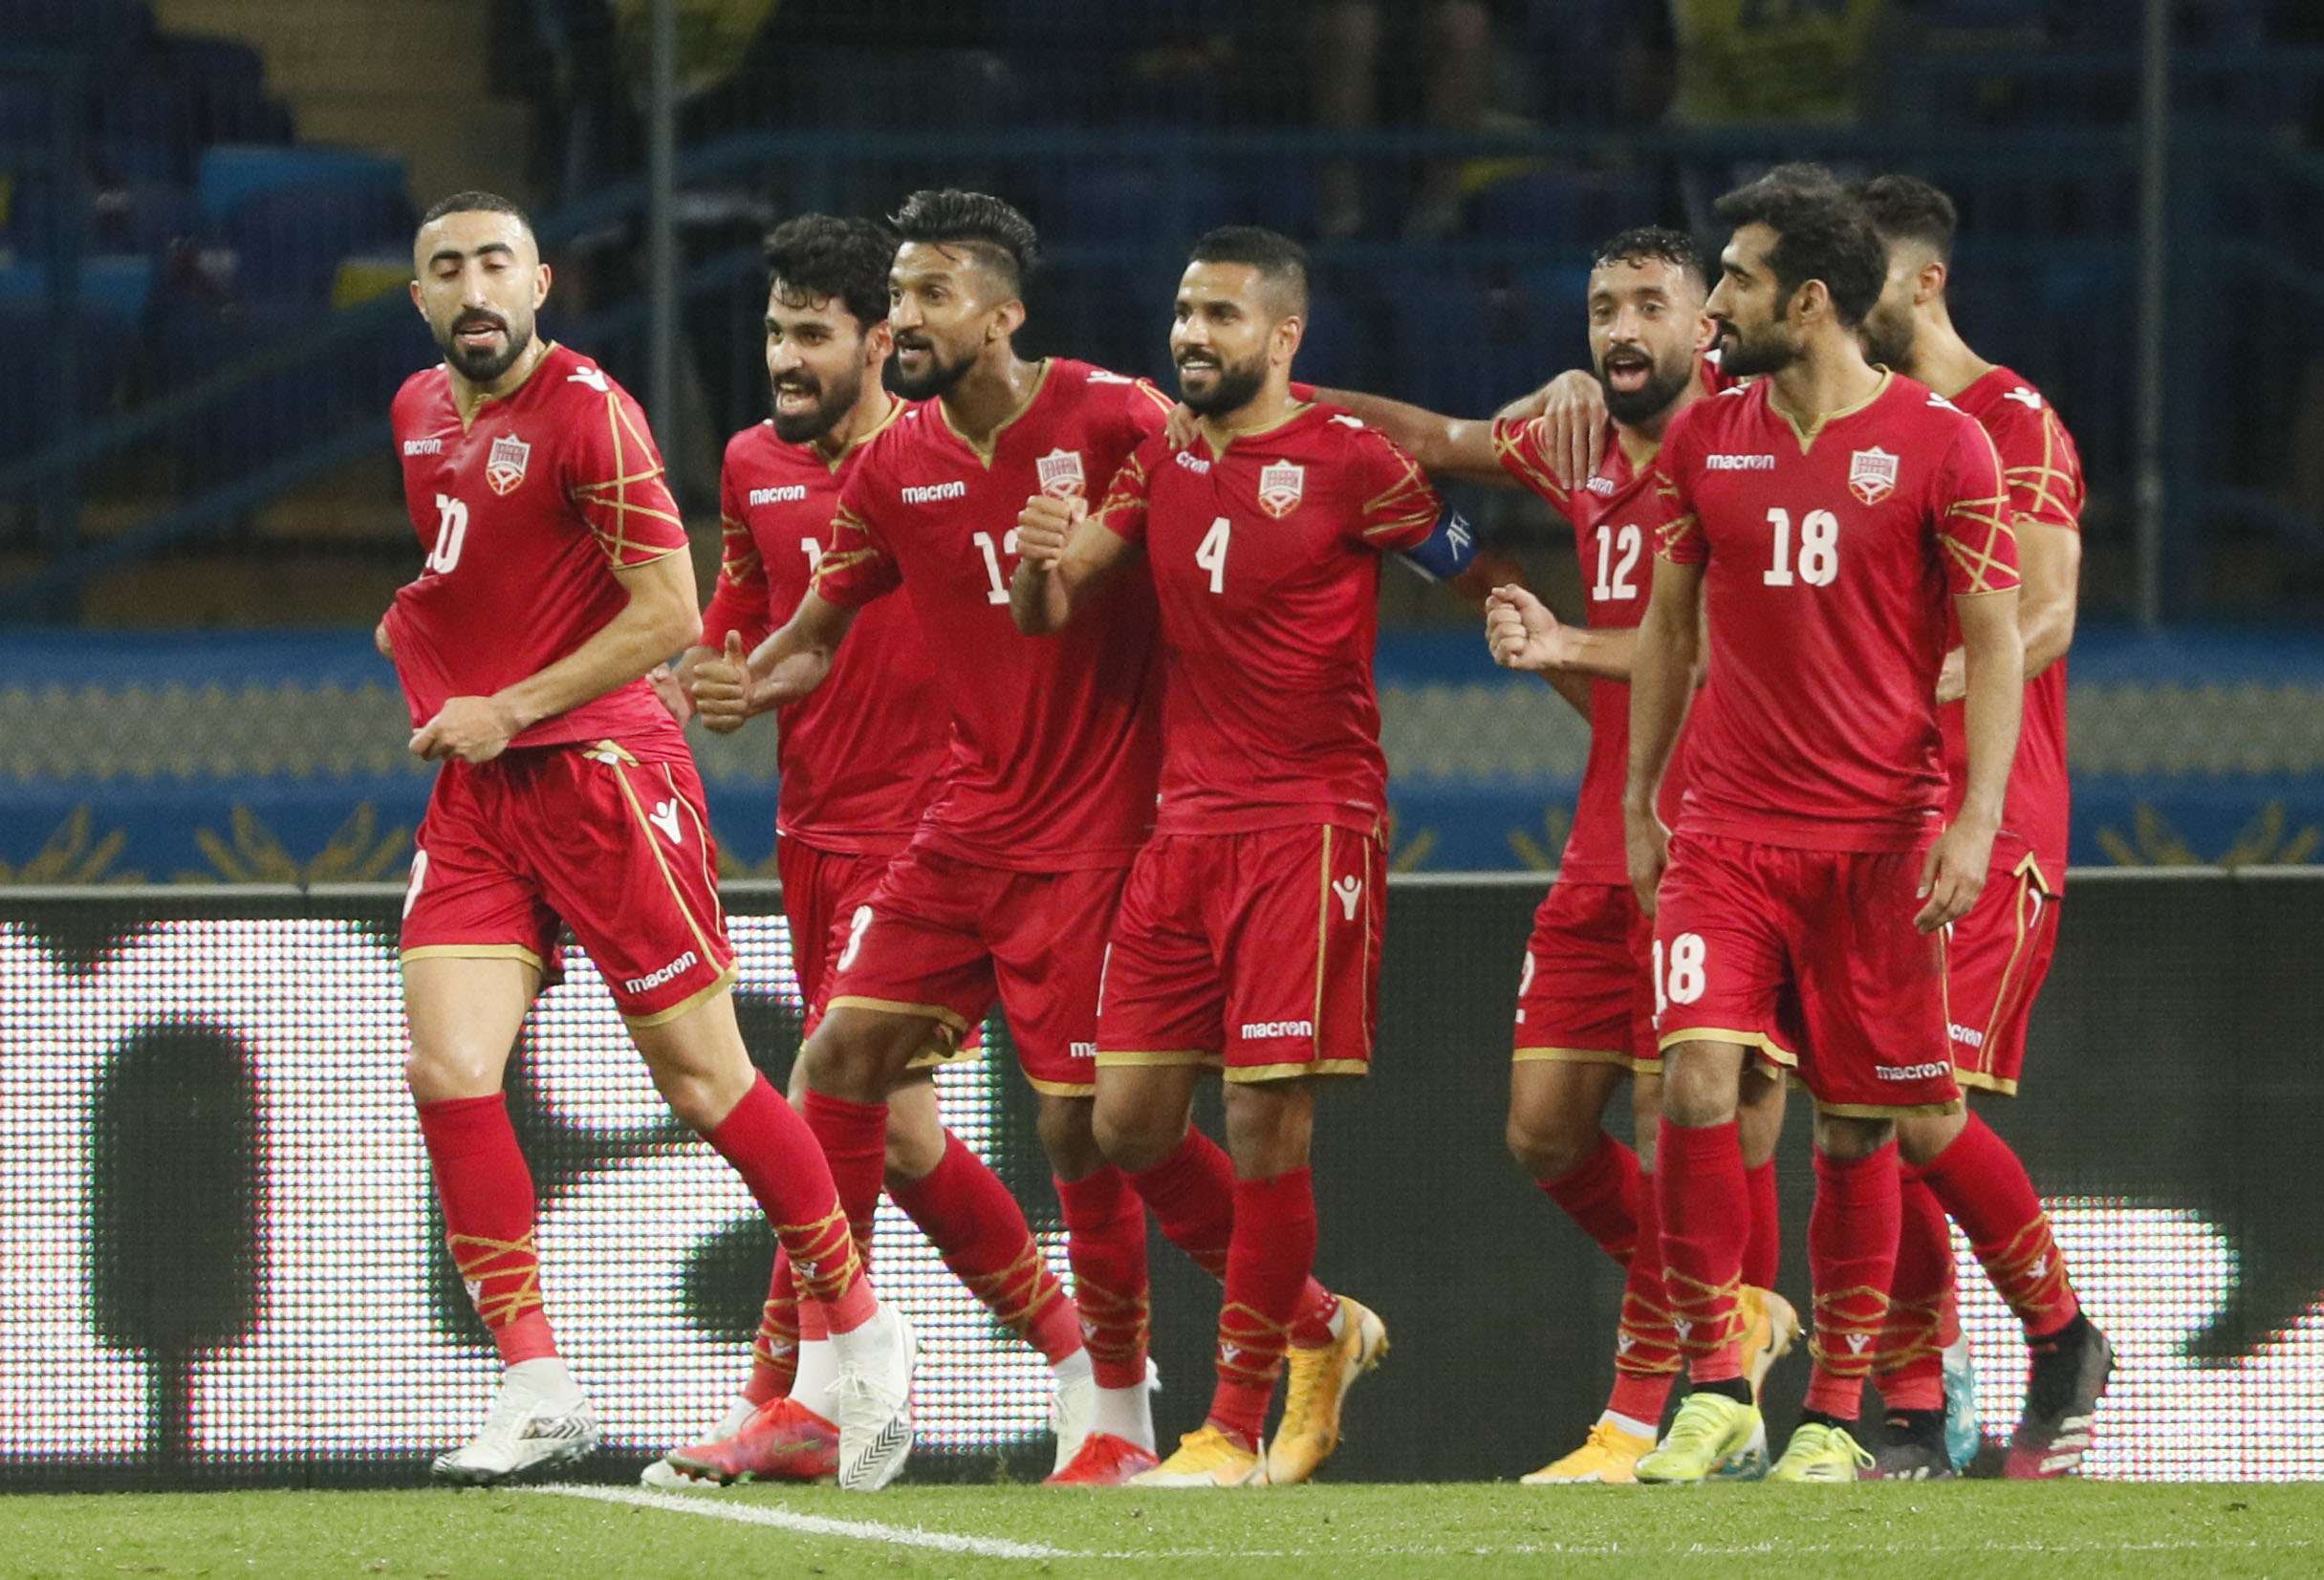 فوز كبير للمنتخب 'الاحمر' البحريني يضعه في المقدمة برصيد 12 نقطة من ست مباريات